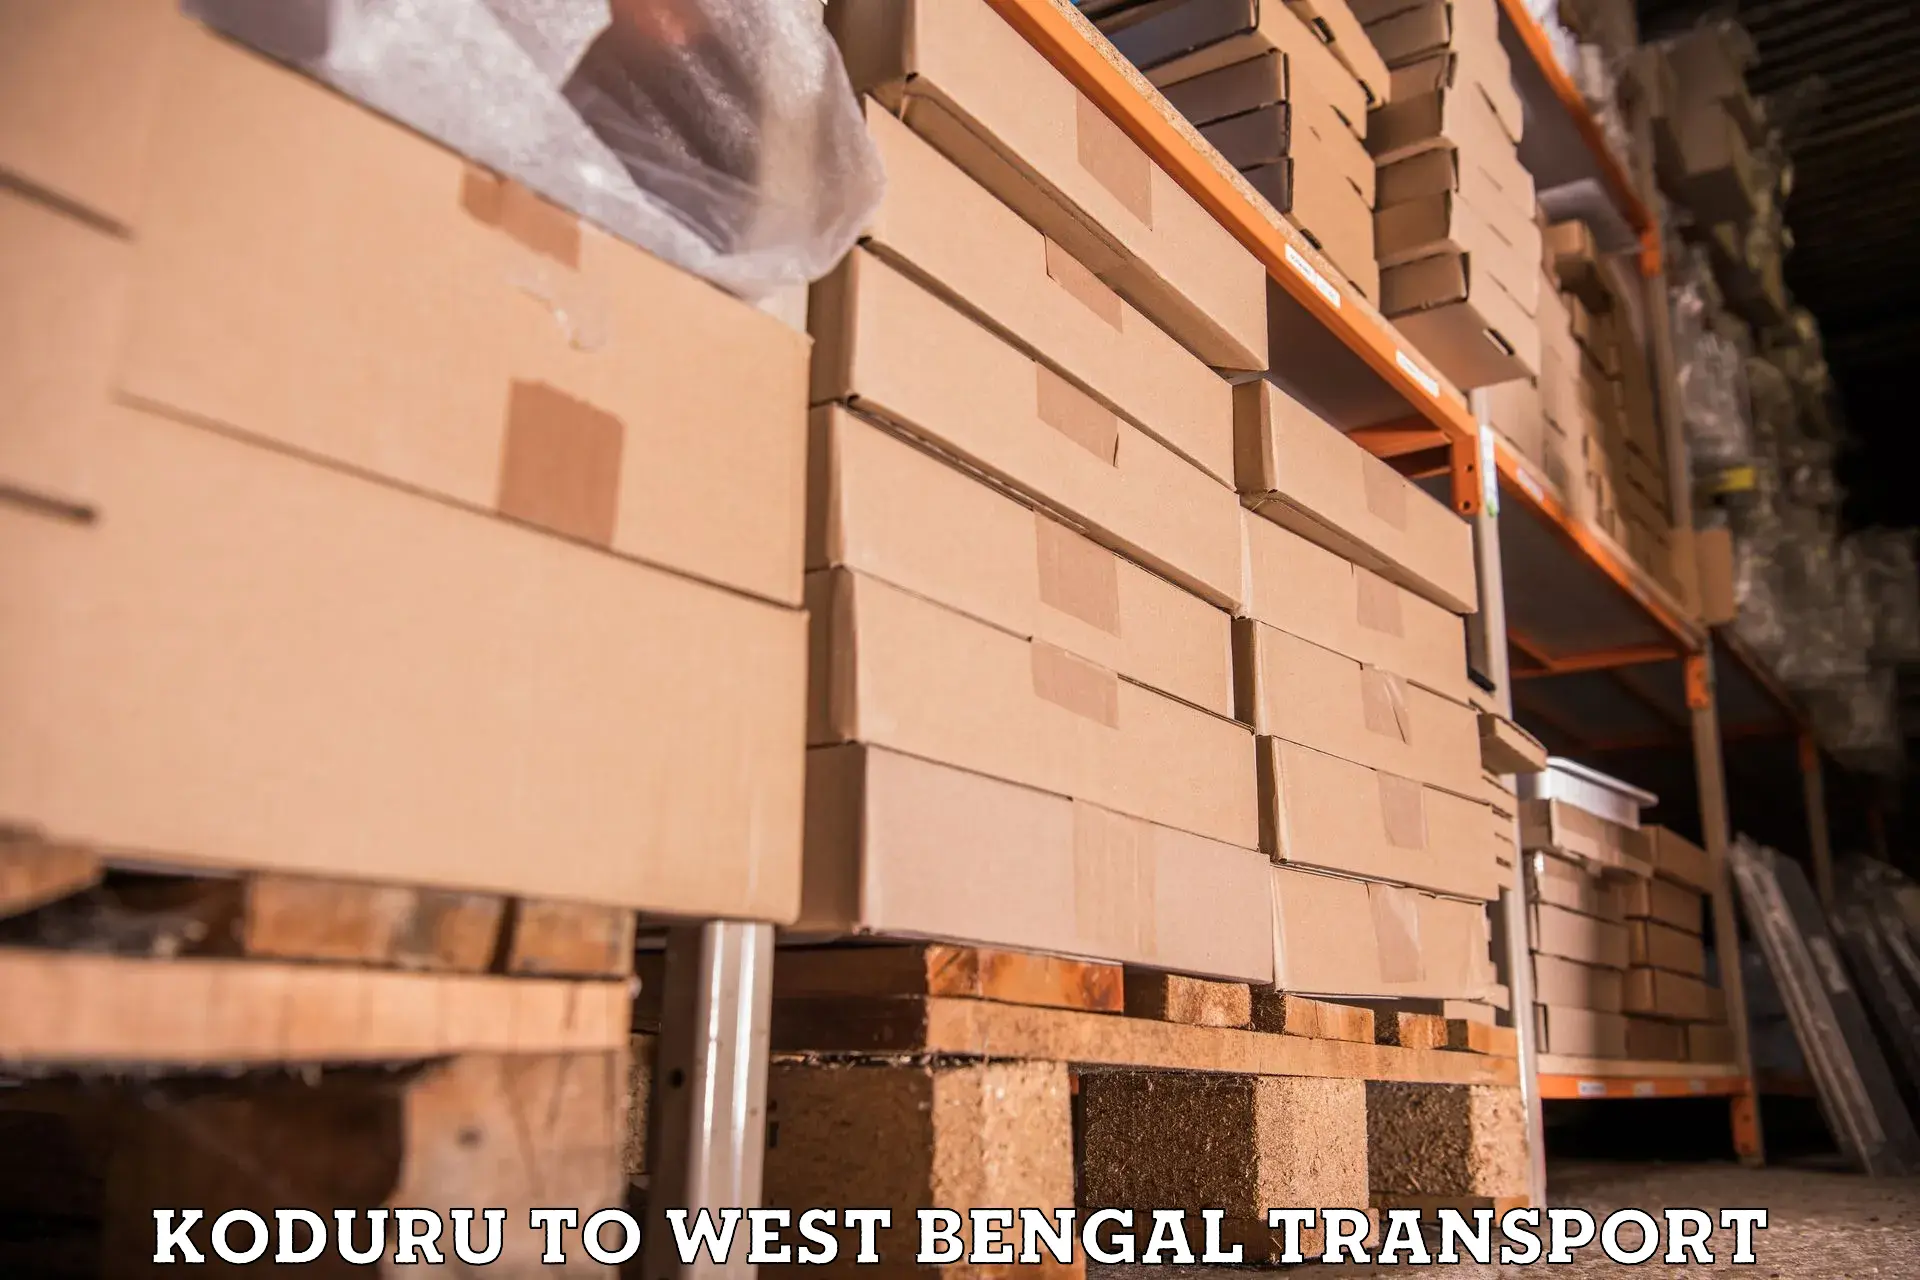 Furniture transport service in Koduru to Baneswar